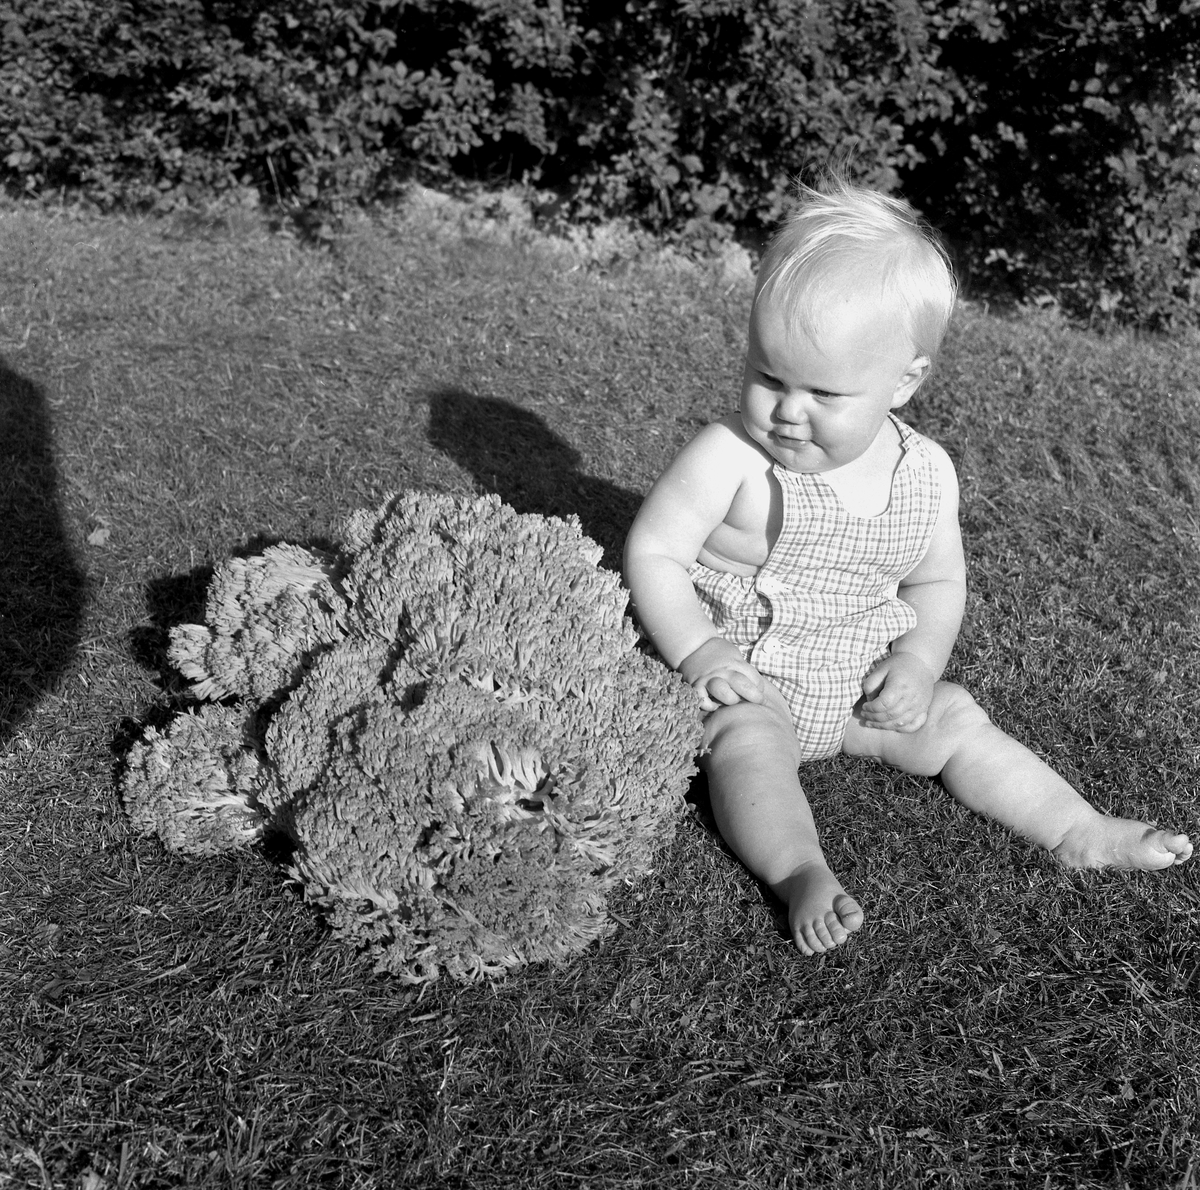 Blomkålssvamp på 6,5 kg.
14 augusti 1958.